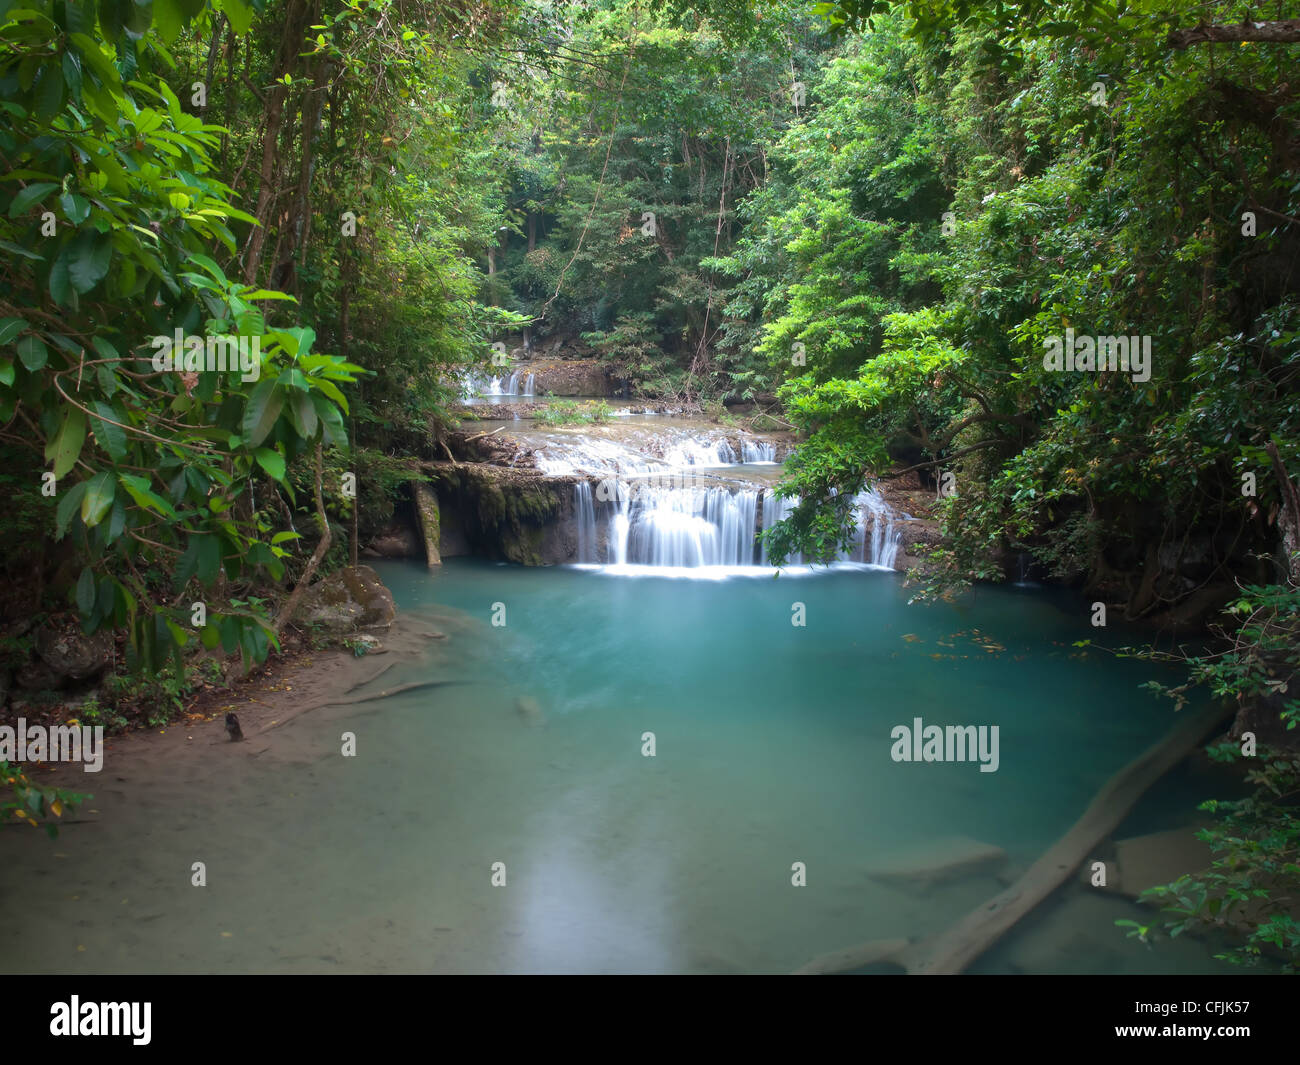 Erawan waterfall in Thailand Stock Photo